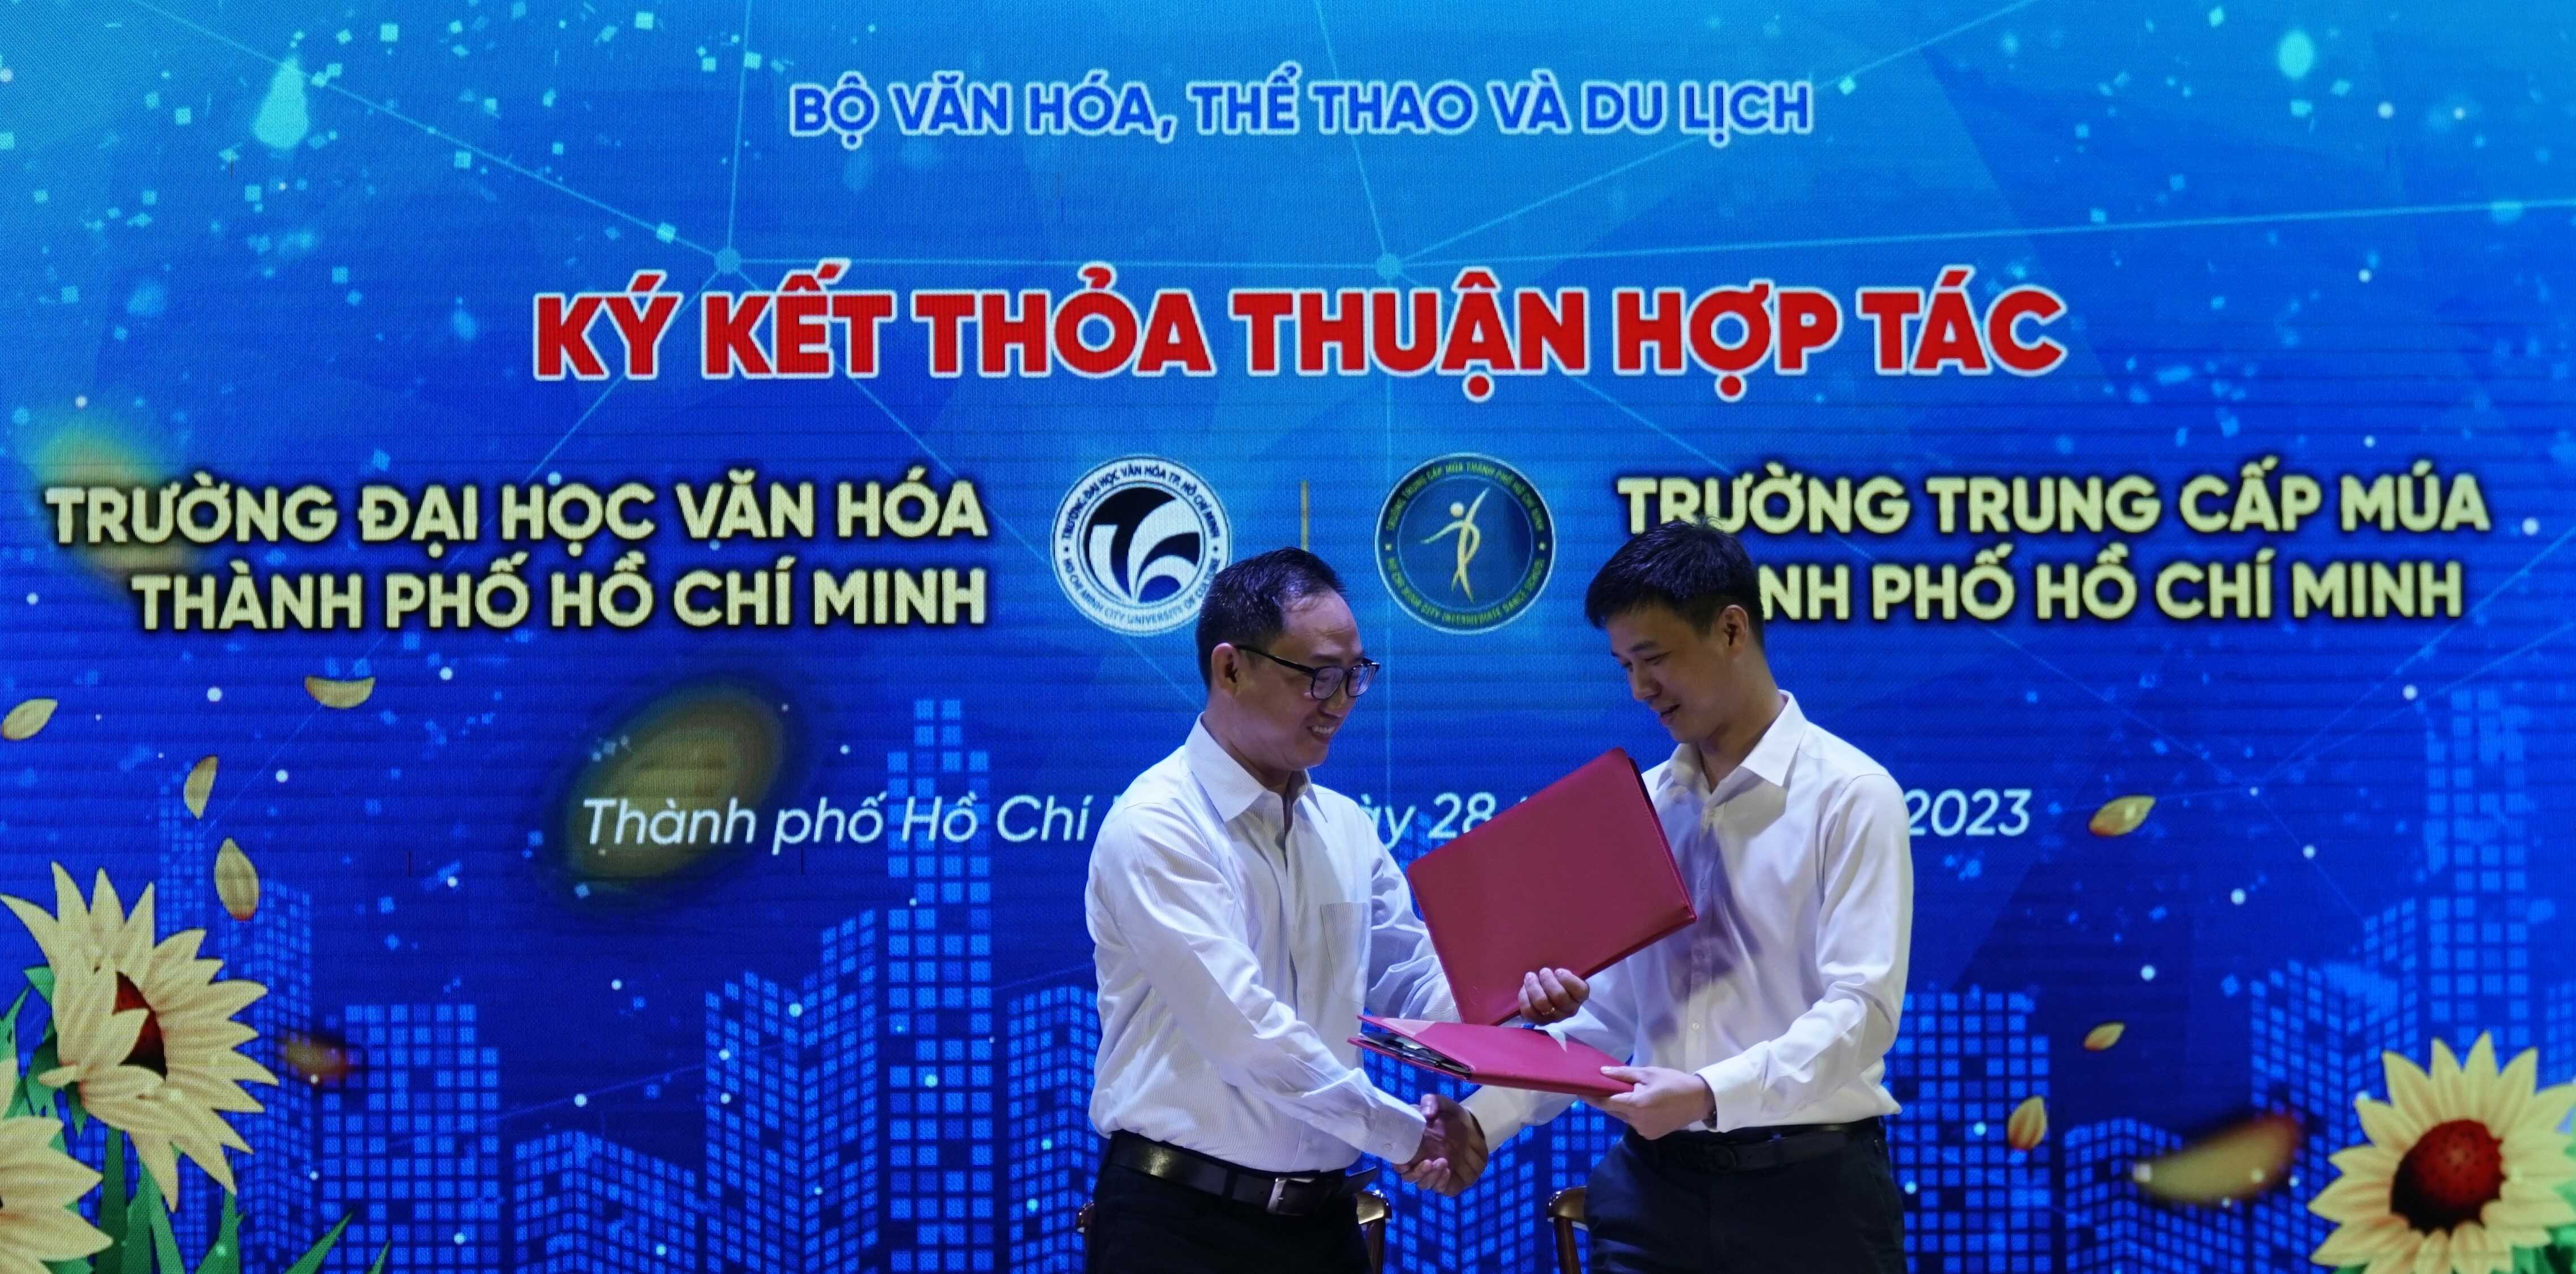 Lễ ký kết biên bản ghi nhớ thỏa thuận hợp tác giữa Trường Đại học Văn hóa TP.HCM và Trường Trung cấp Múa TP.HCM